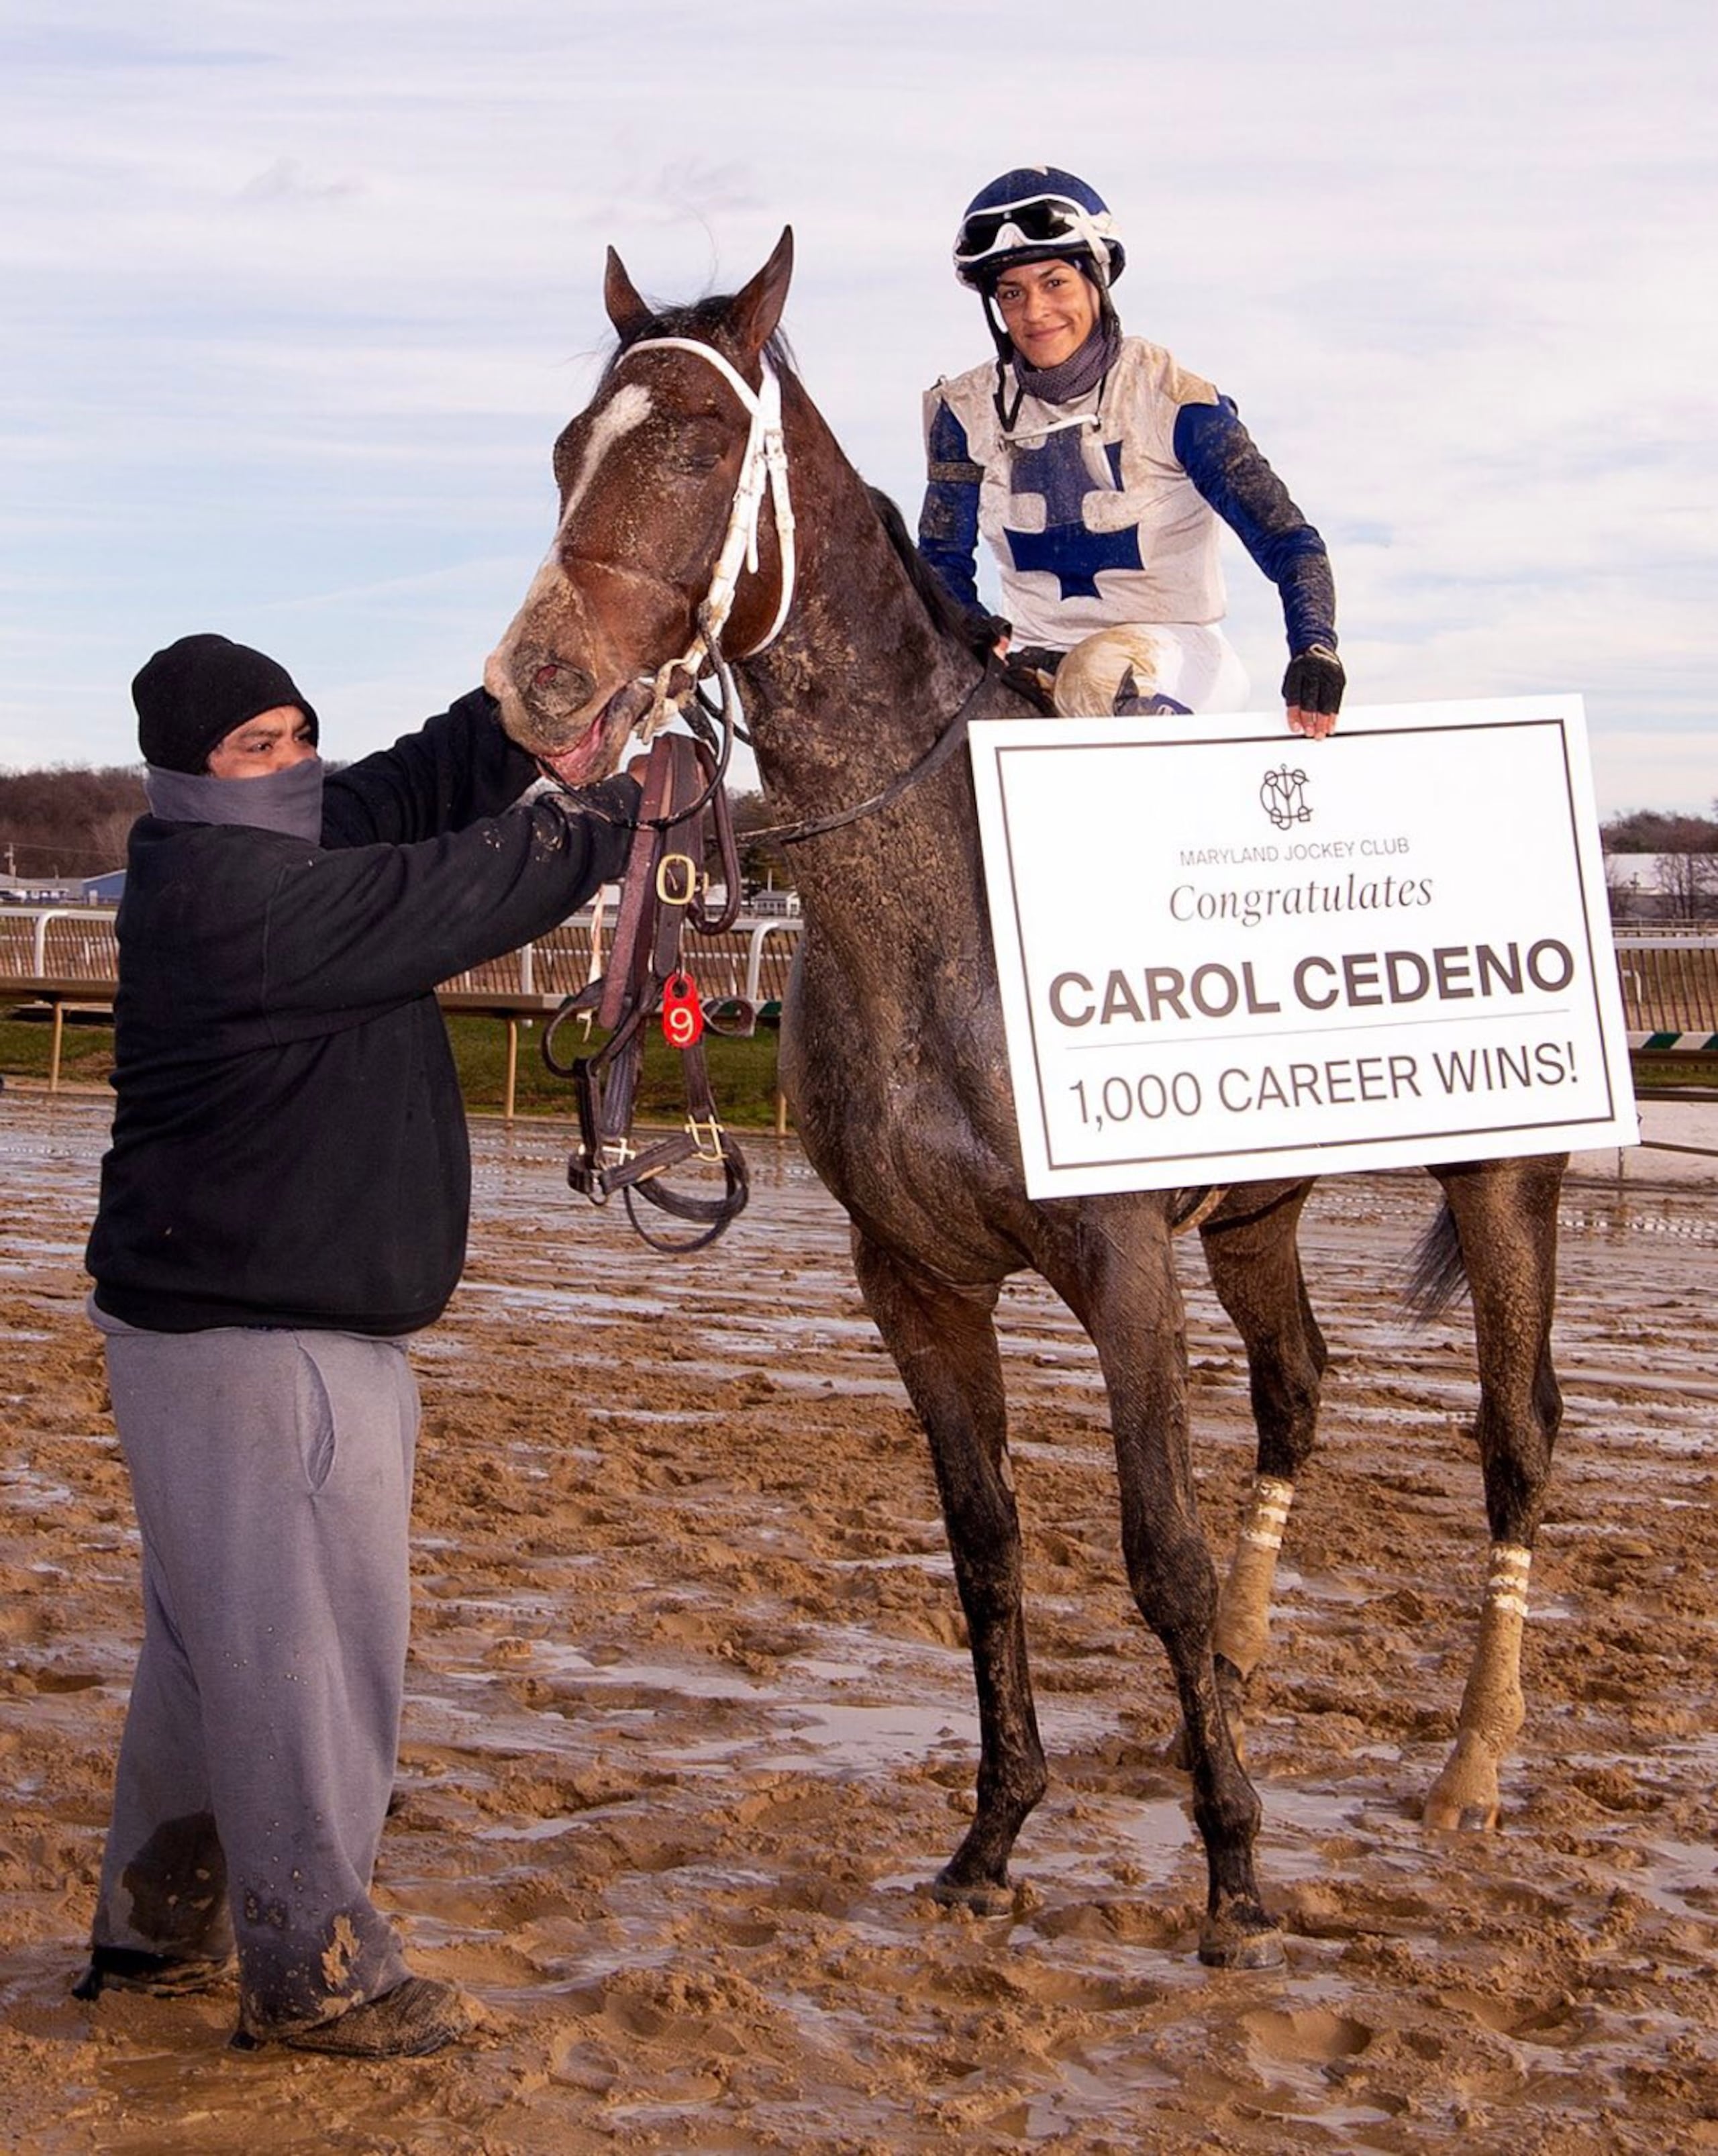 Carol Cedeño viene de registrar su victoria número 1,000 en su carrera en Maryland.